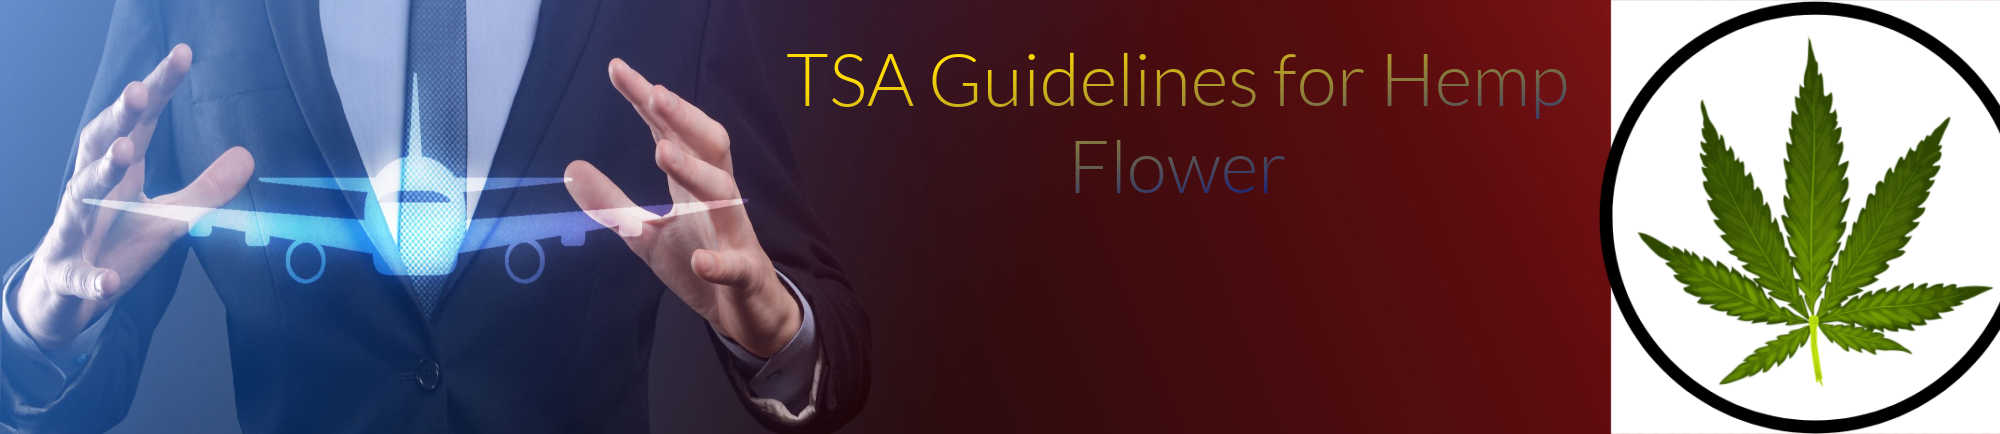 image of tsa guidelines for hemp flower